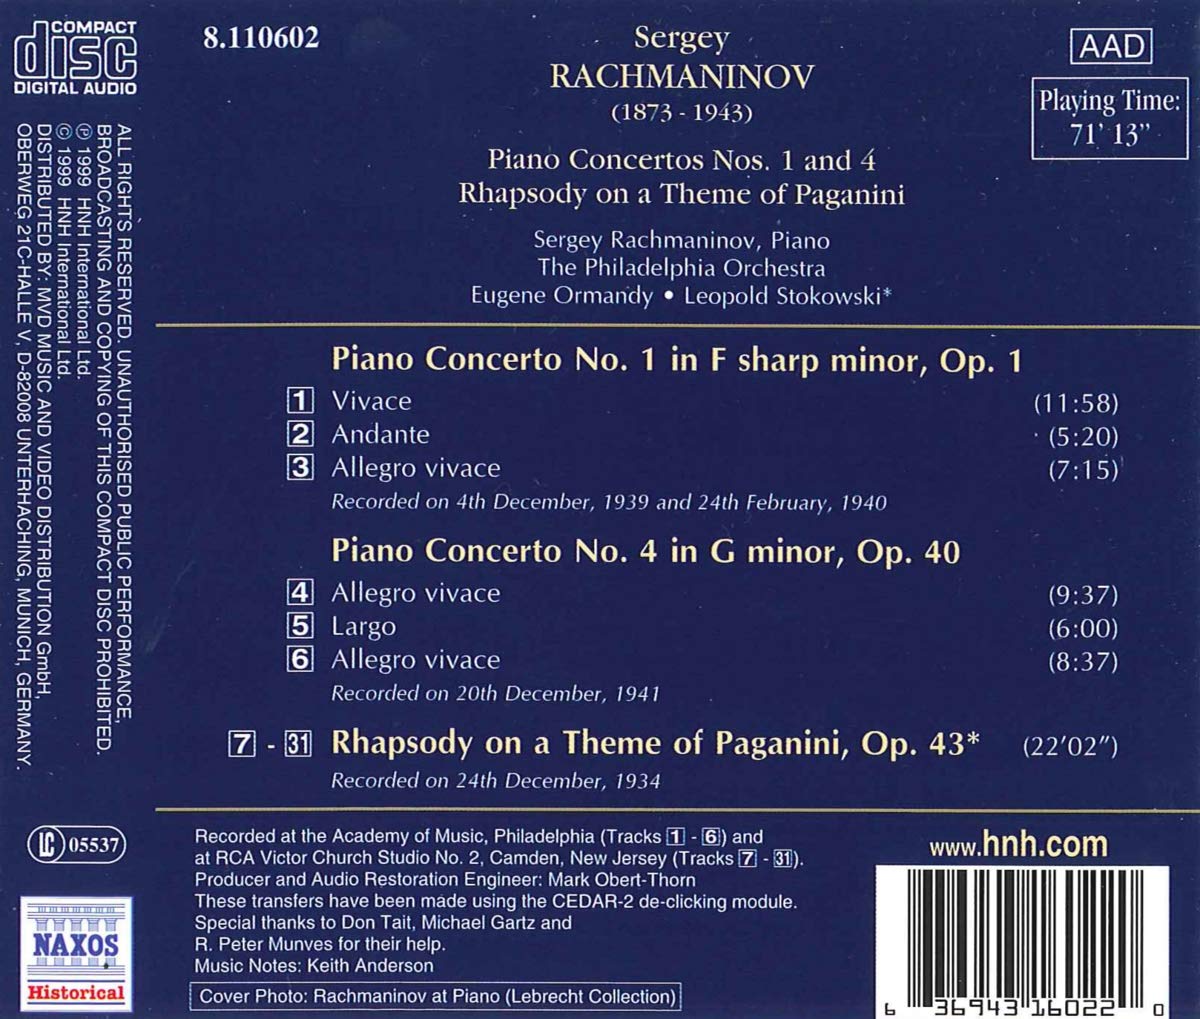 라흐마니노프가 직접 연주하는 피아노 협주곡 1, 4번 (Sergey Rachmaninov Plays Rachmaninov Piano Concertos Op.1, Op.40) 